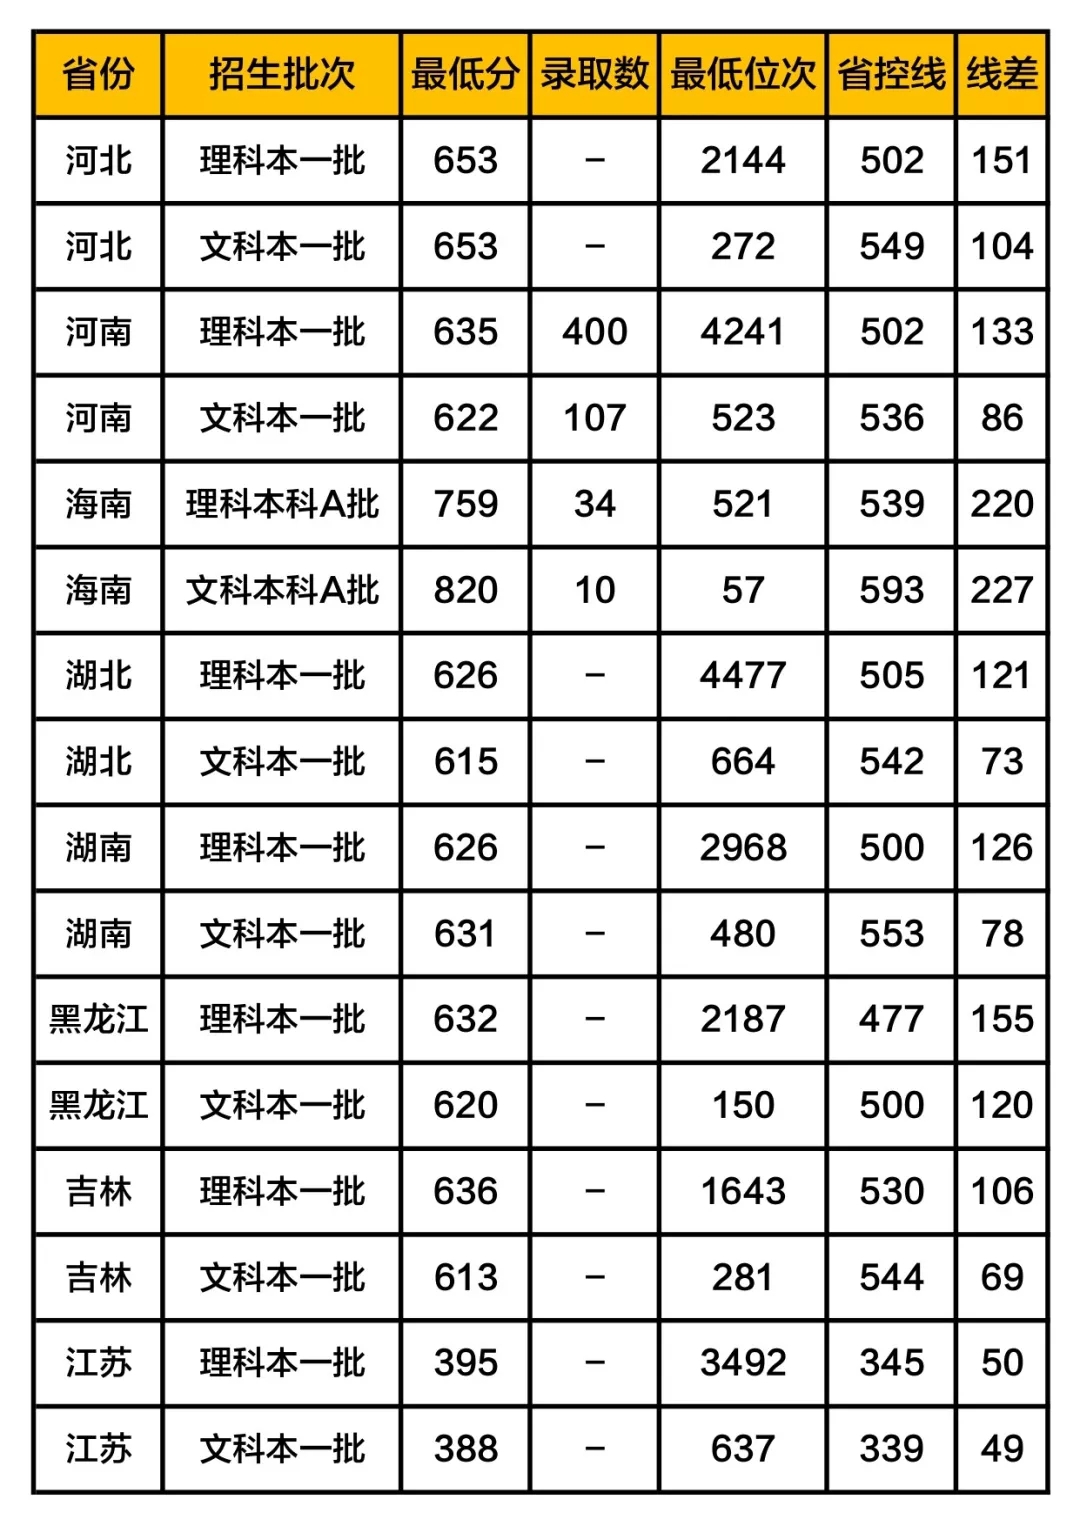 武汉大学分数线2020报考攻略2019高考录取情况